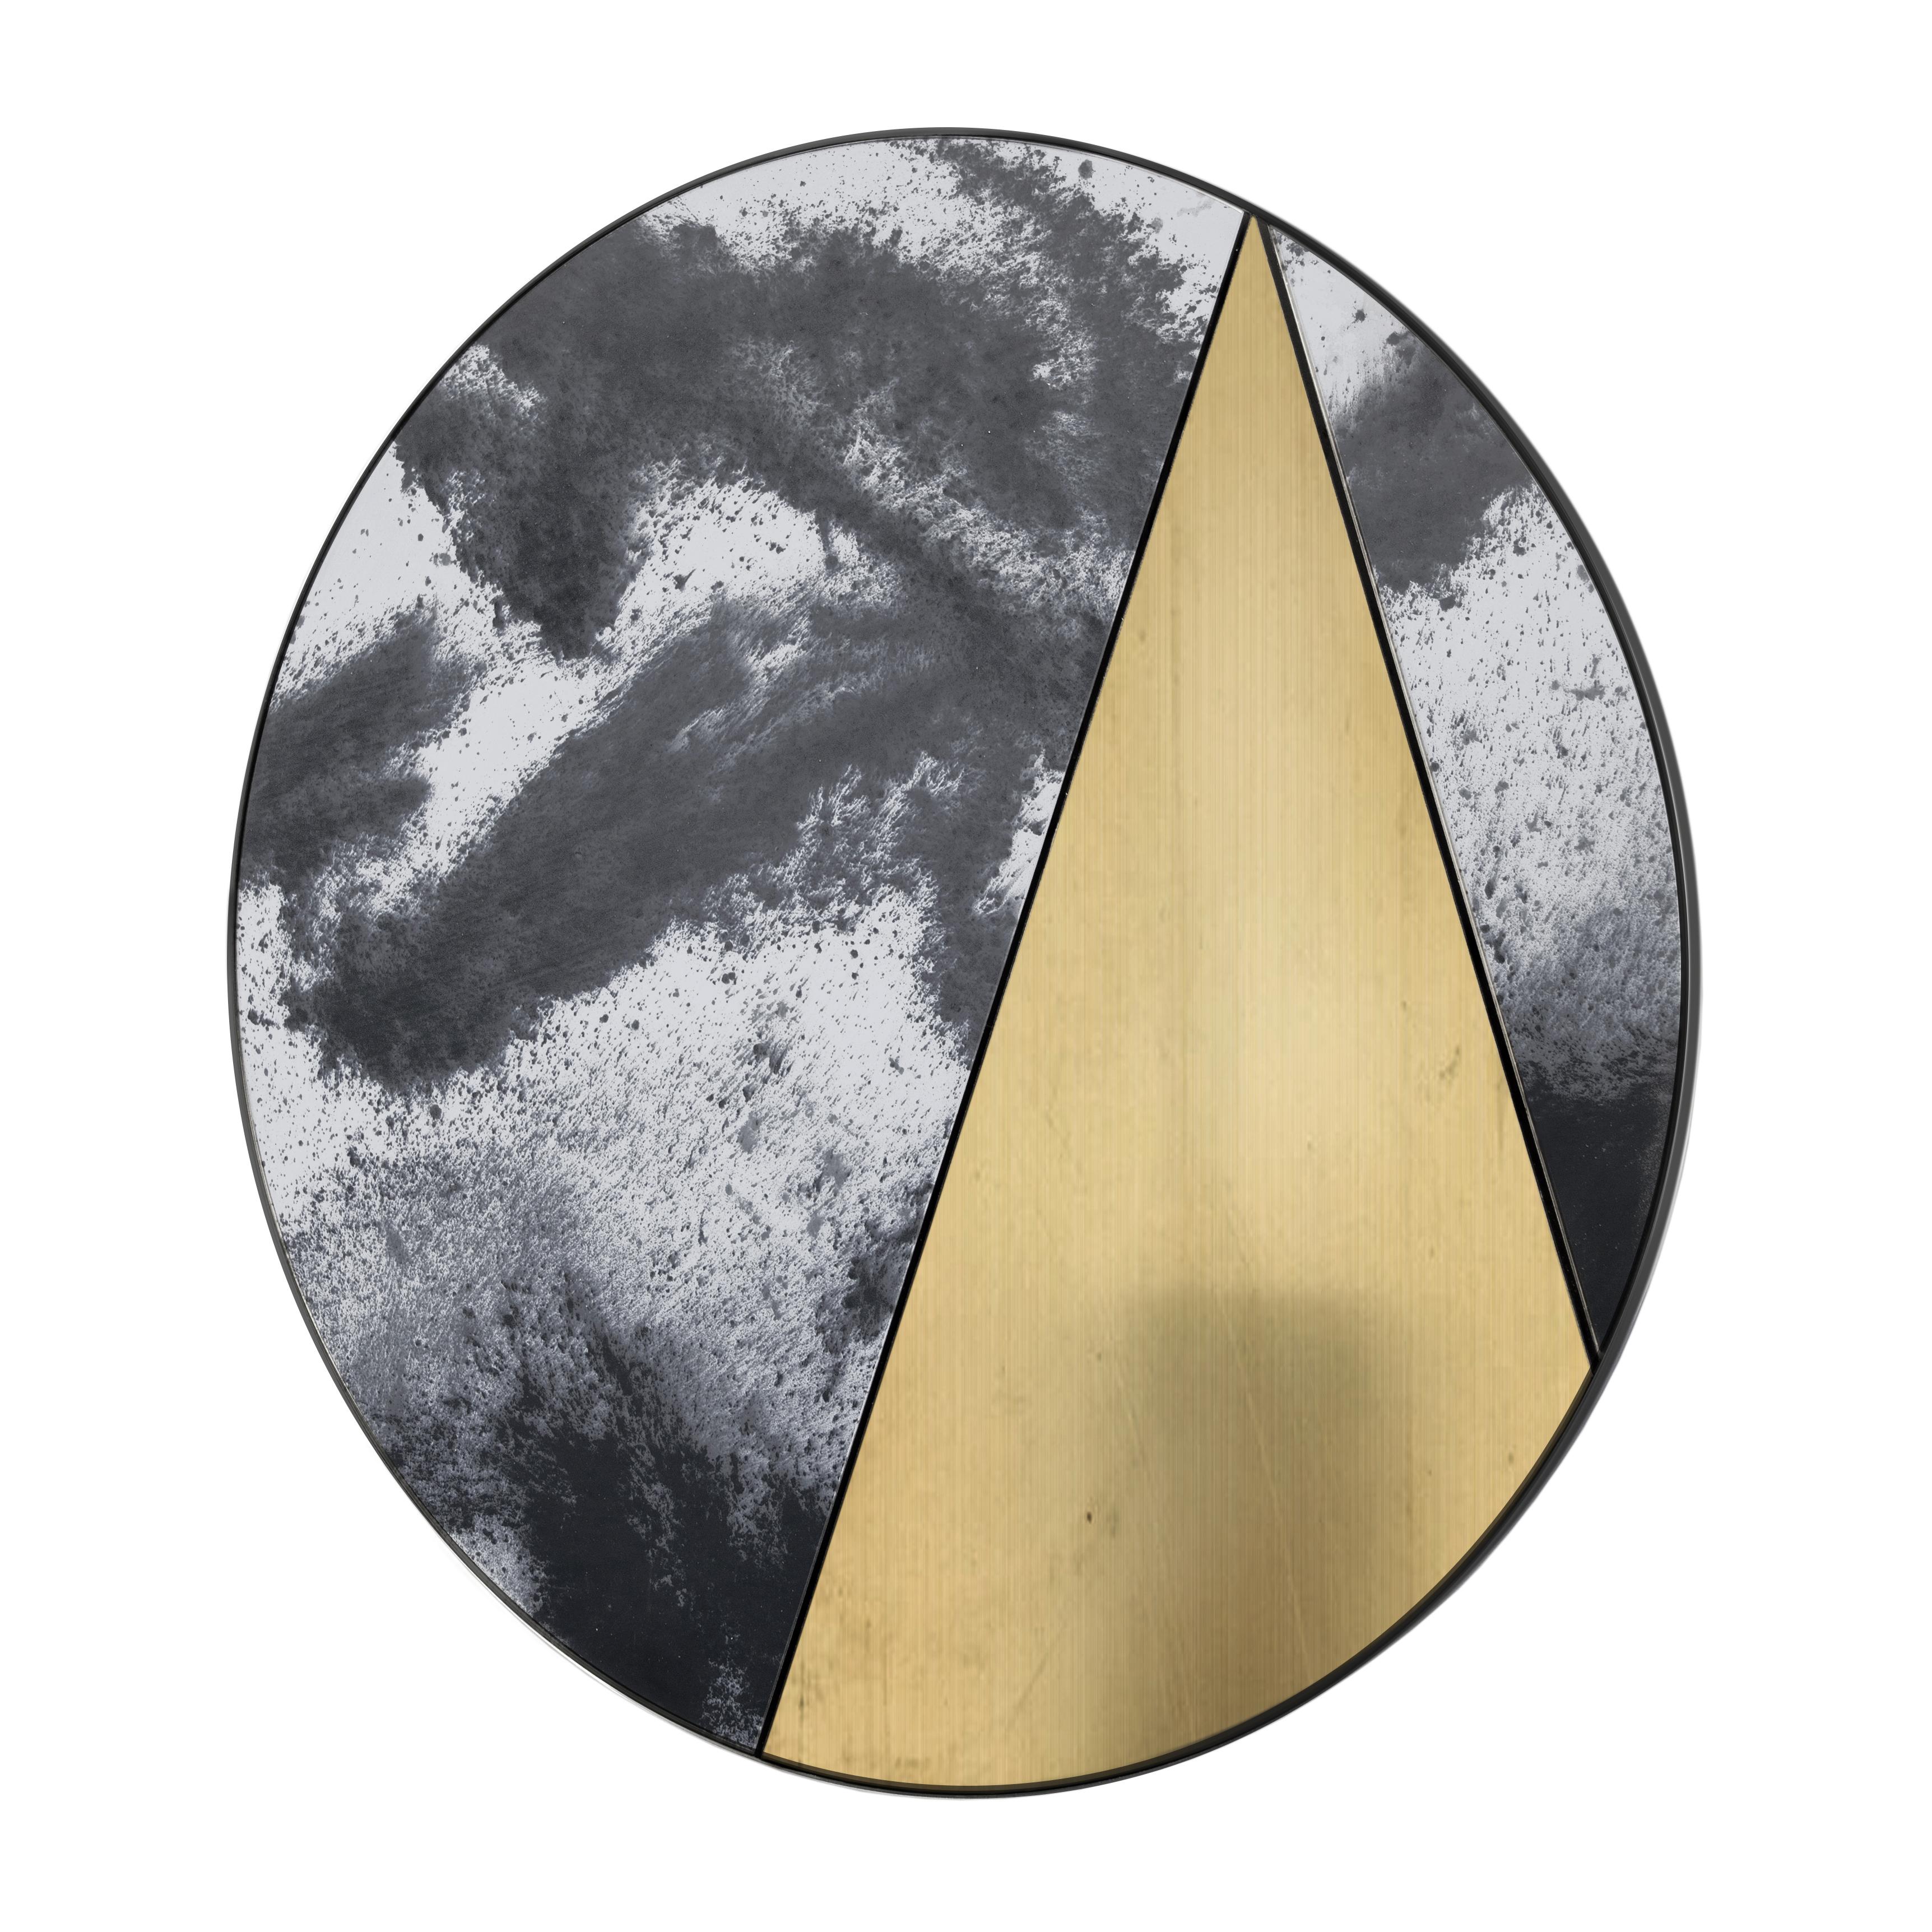 Itinera Res Lunare II

Durch die Kombination der atemberaubenden Spiegelgläser von Antique Mirrors mit der Wärme der handgefertigten Naturmaterialien werden die Res-Spiegel zu einem eleganten Blickfang in jeder Umgebung. Die harmonische Klarheit des